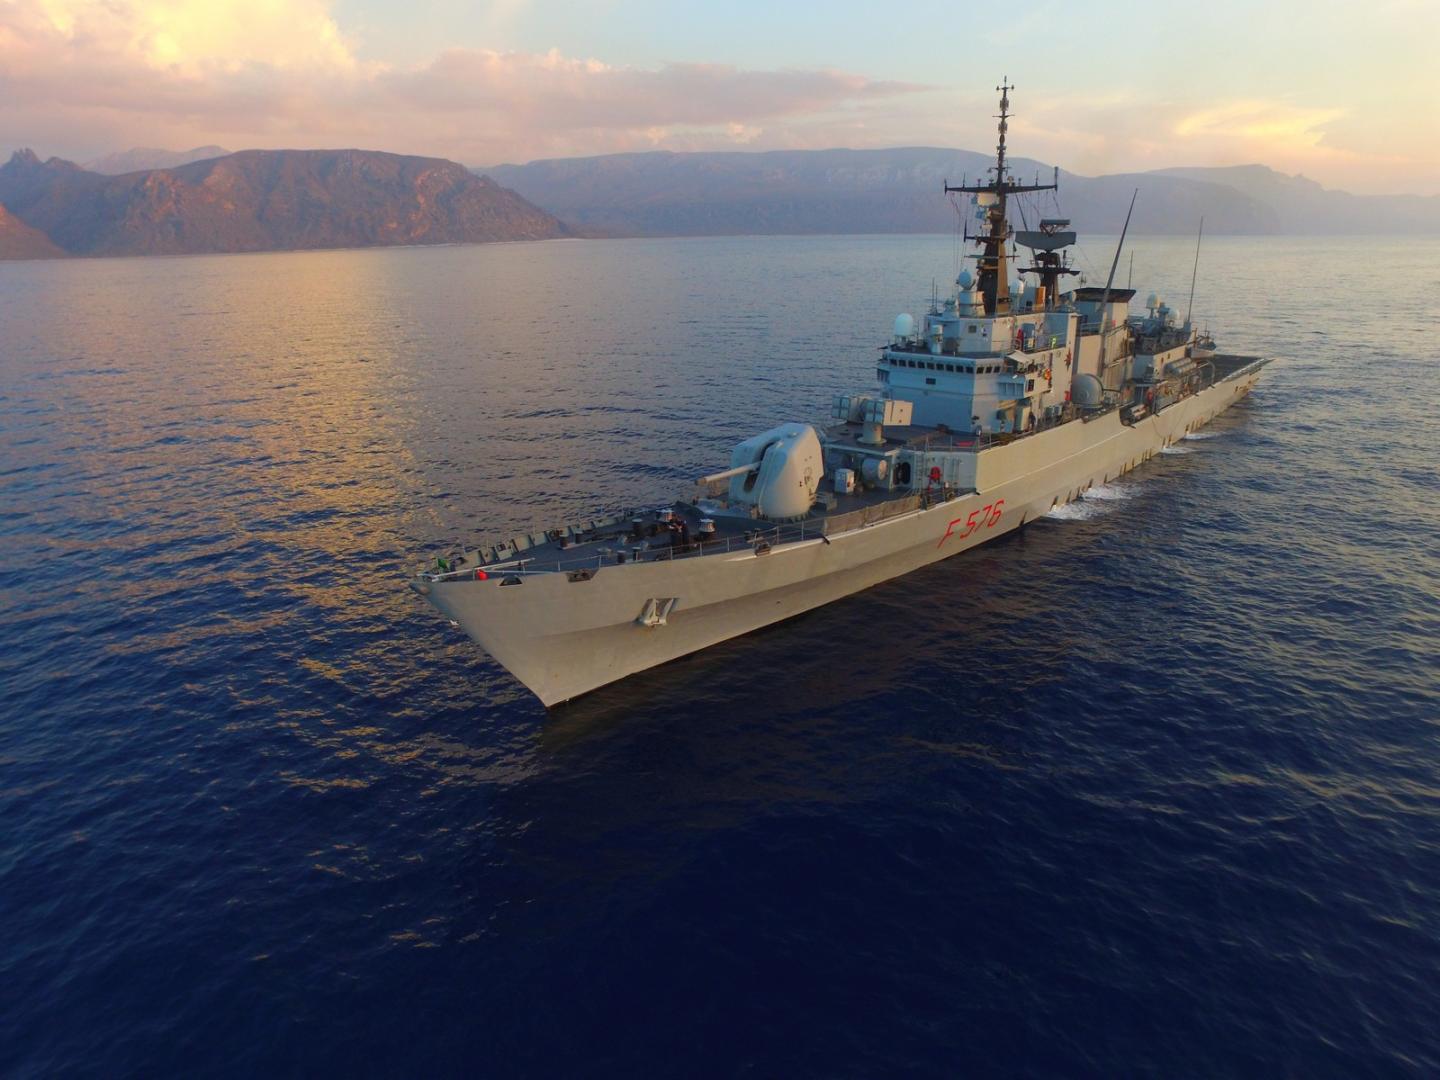 Partita da Taranto, la nave Espero della Marina Militare è entrata oggi nel gruppo navale NATO dove opererà fino a luglio per l'Operazione Sea Guardian